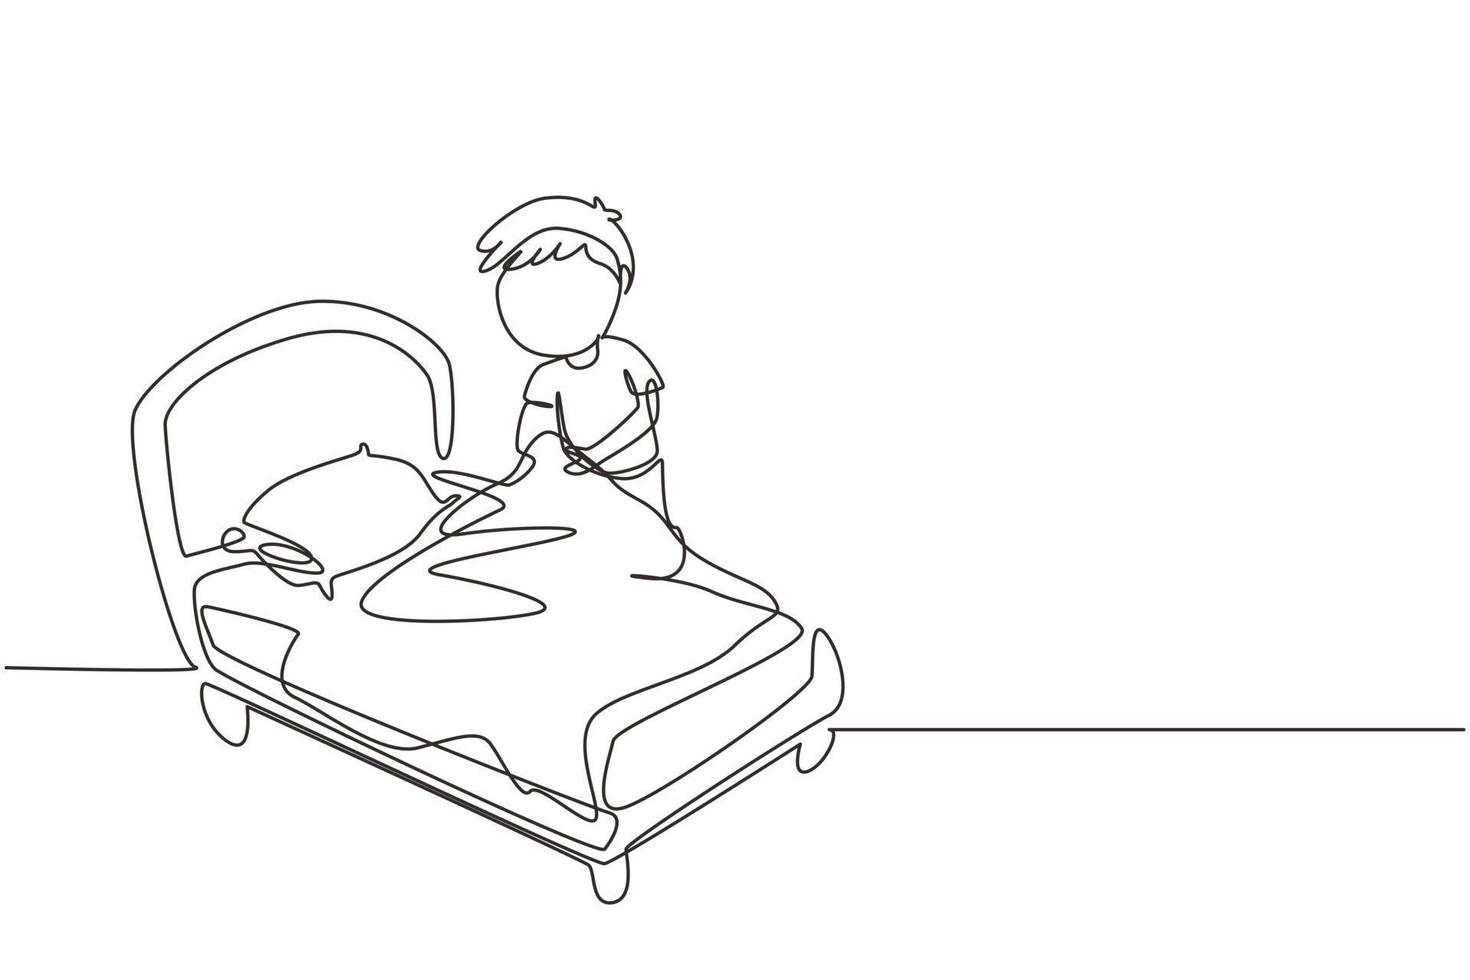 dibujo de una sola línea continua niño pequeño haciendo la cama. niños haciendo tareas domésticas en el concepto de hogar. rutina de los niños después de levantarse para ordenar la cama. ilustración de vector de diseño gráfico de dibujo de una línea